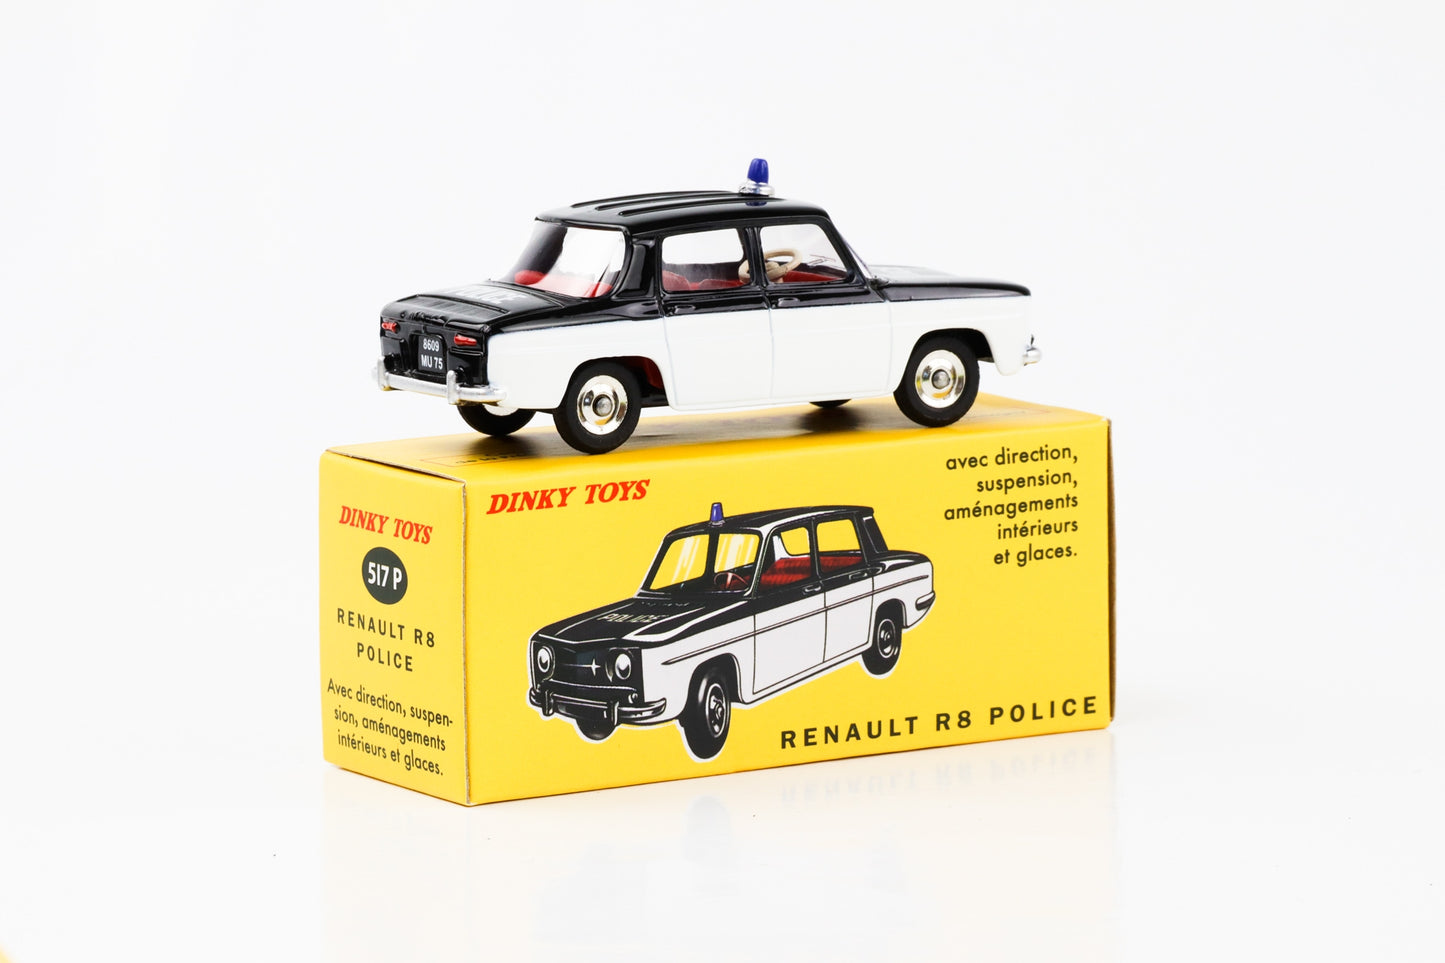 1:43 Renault R8 police black white Dinky Toys DeAgostini 517 P